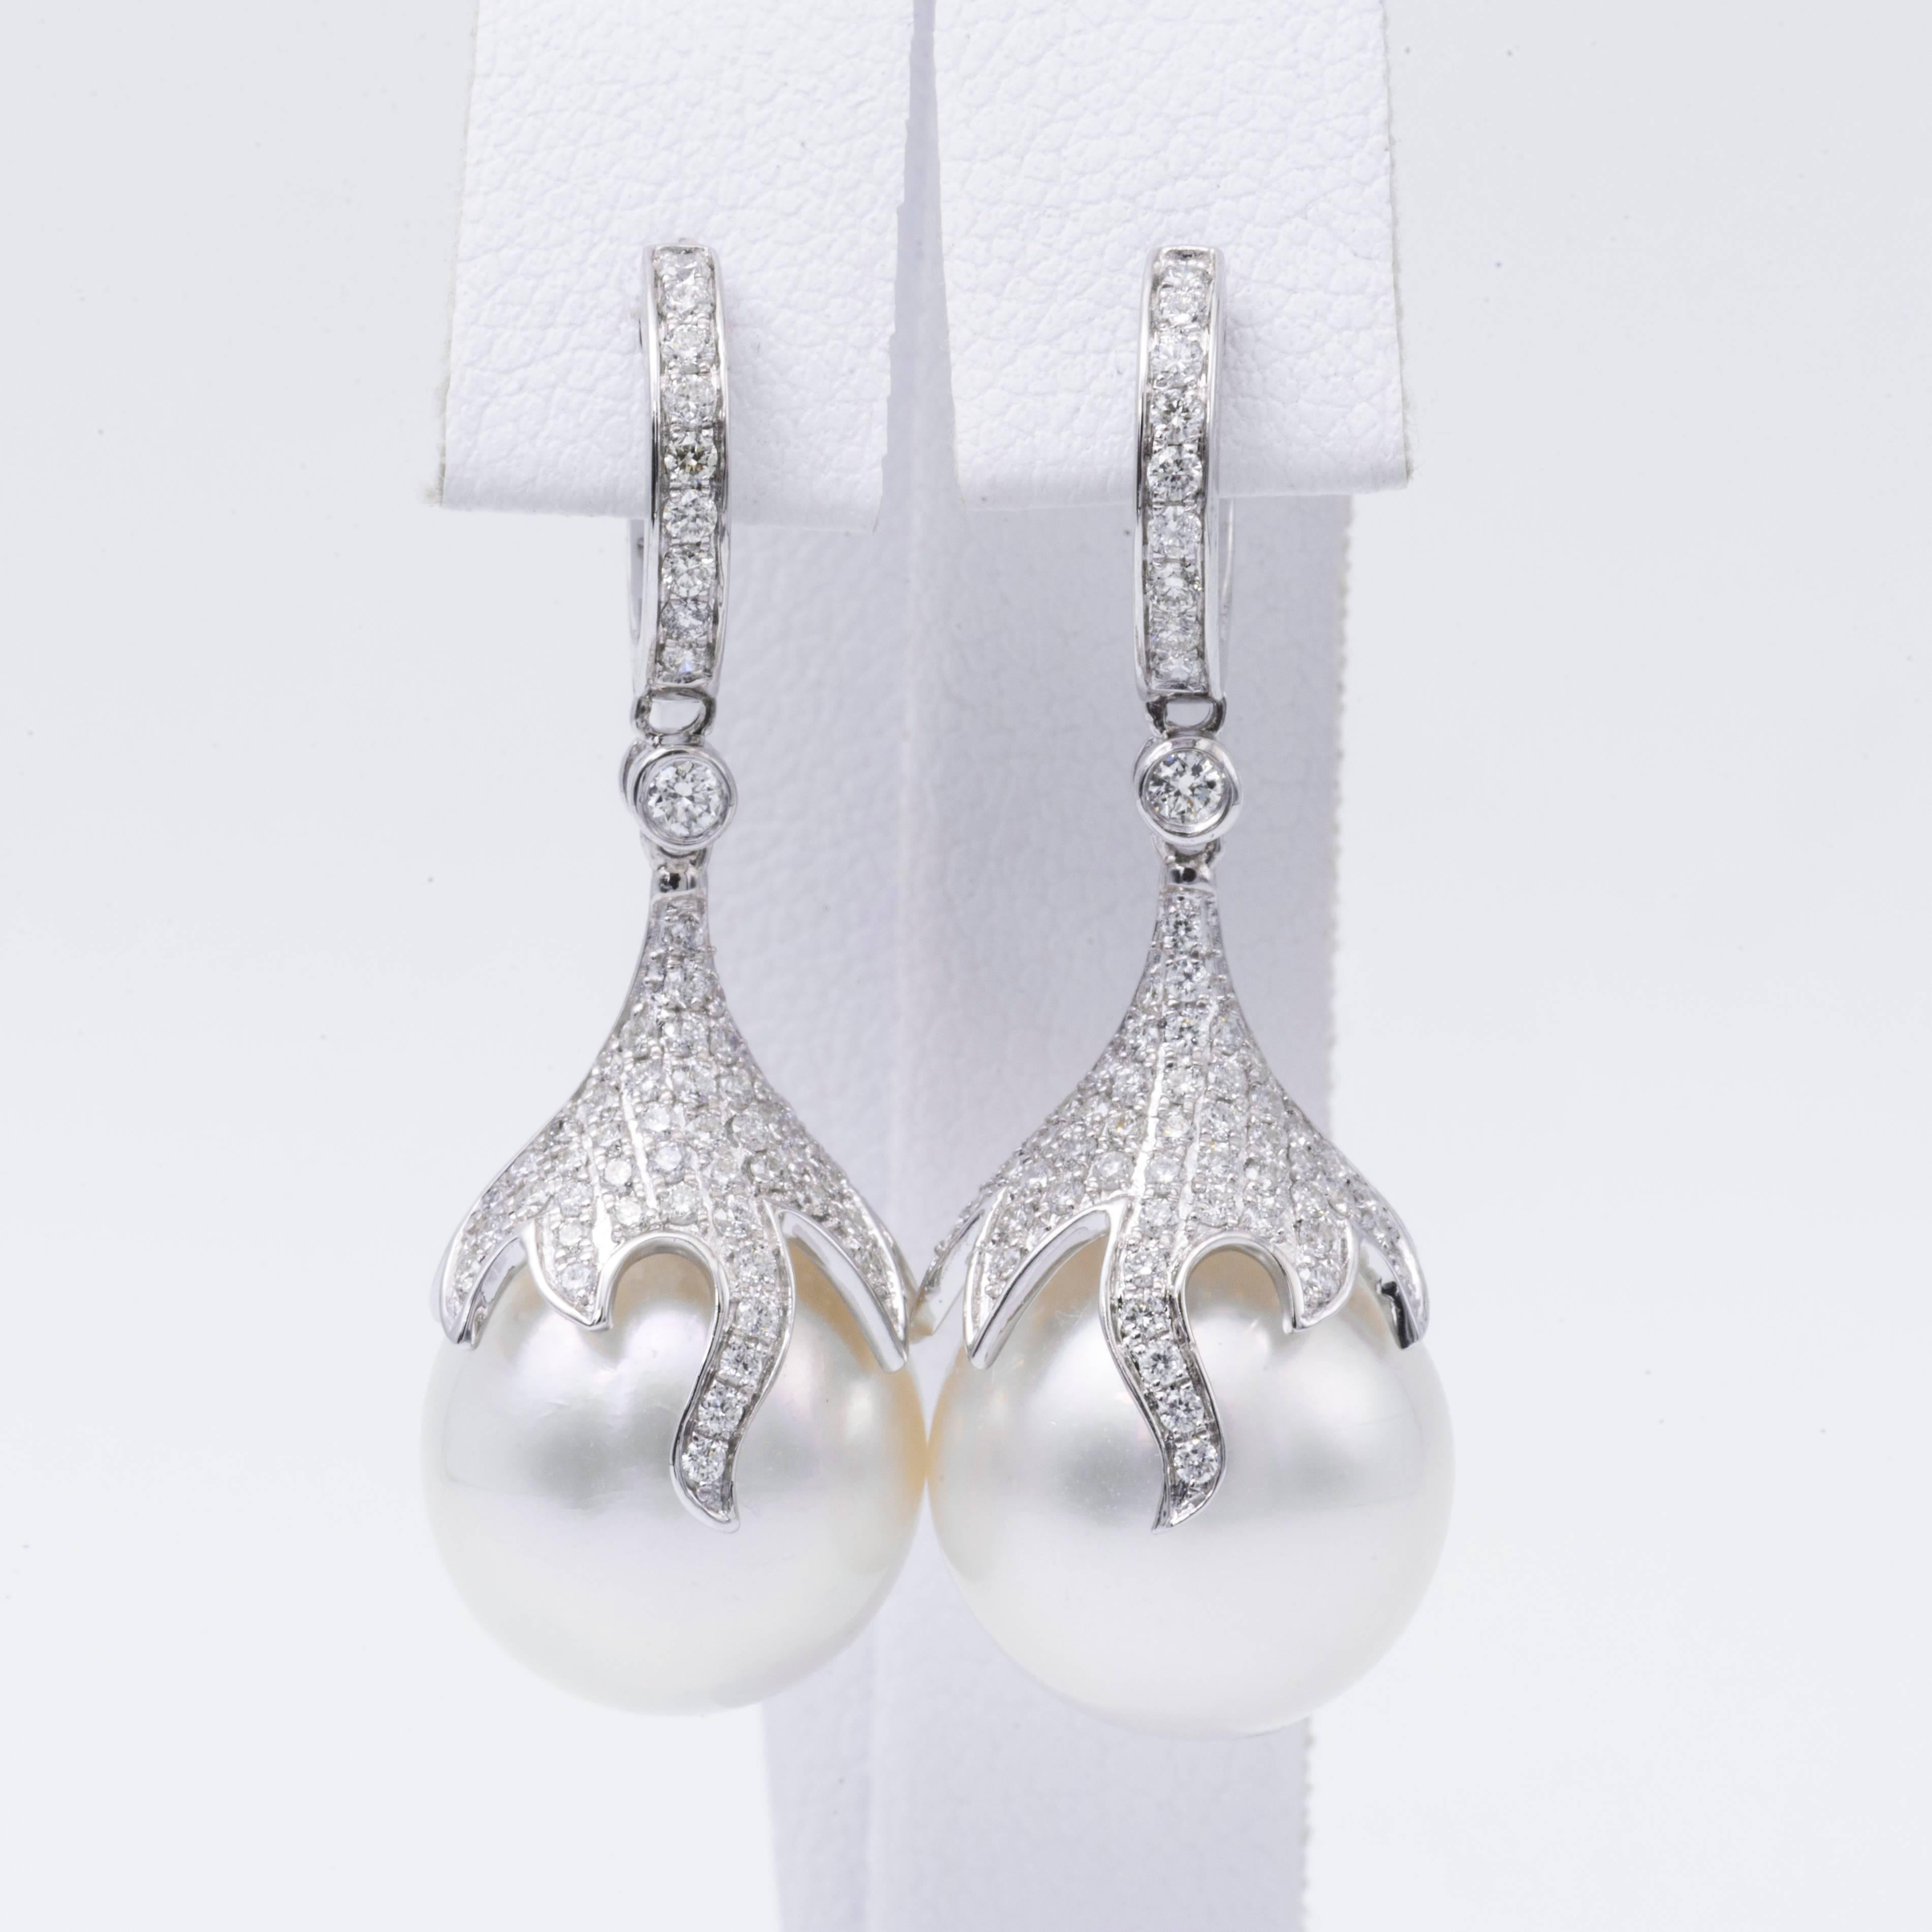 Boucles d'oreilles en or blanc 18 carats mettant en valeur deux perles des mers du Sud mesurant 12-13 mm flanquées de 122 brillants ronds pesant 0,73 carats.

Qualité de la perle AA
Éclat AA, Excellent
Nacre très épaisse